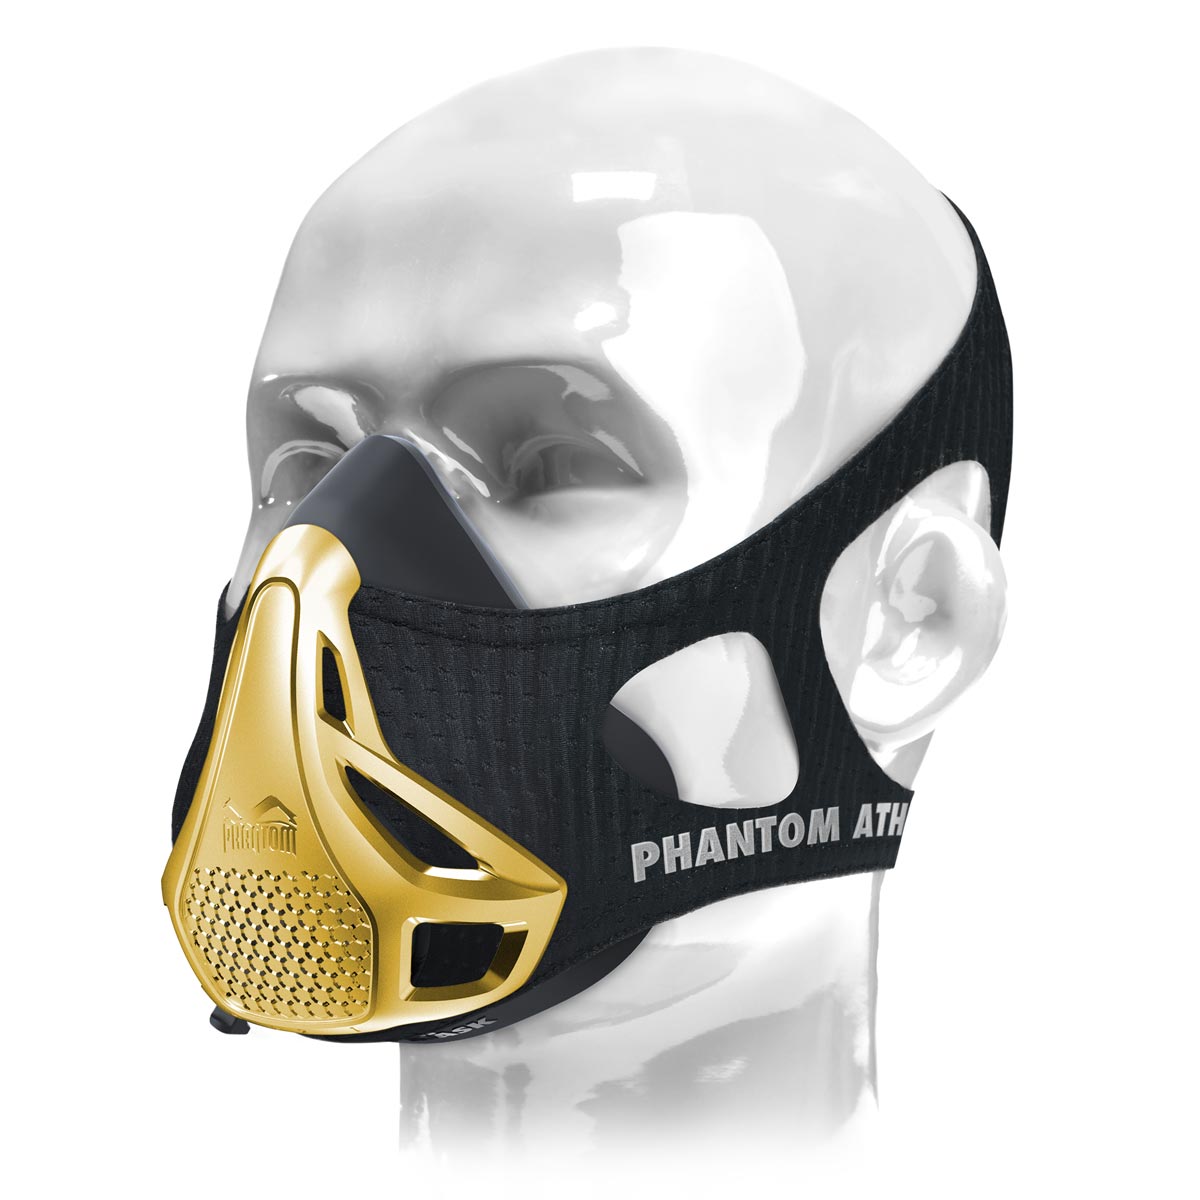 Phantom treniņu maska. Oriģināls. Patentēts un piešķirts, lai paceltu jūsu fizisko sagatavotību uz nākamo līmeni. Tagad ierobežotā zelta izdevumā.